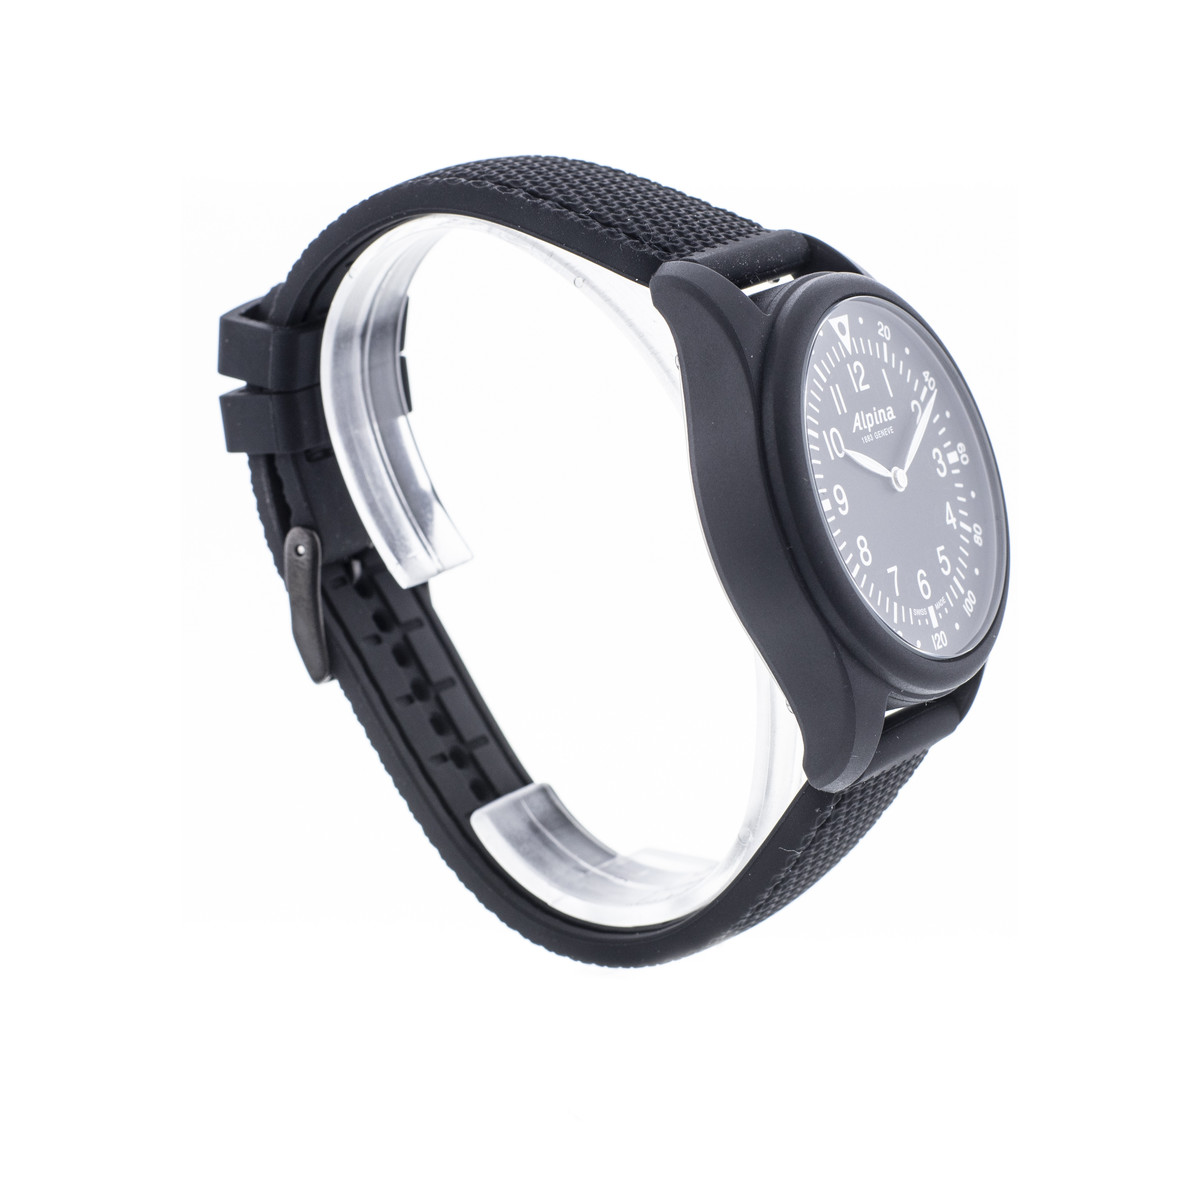 Montre d'occasion Alpina Startimer X homme fibre de verre bracelet caoutchouc noir - vue D2